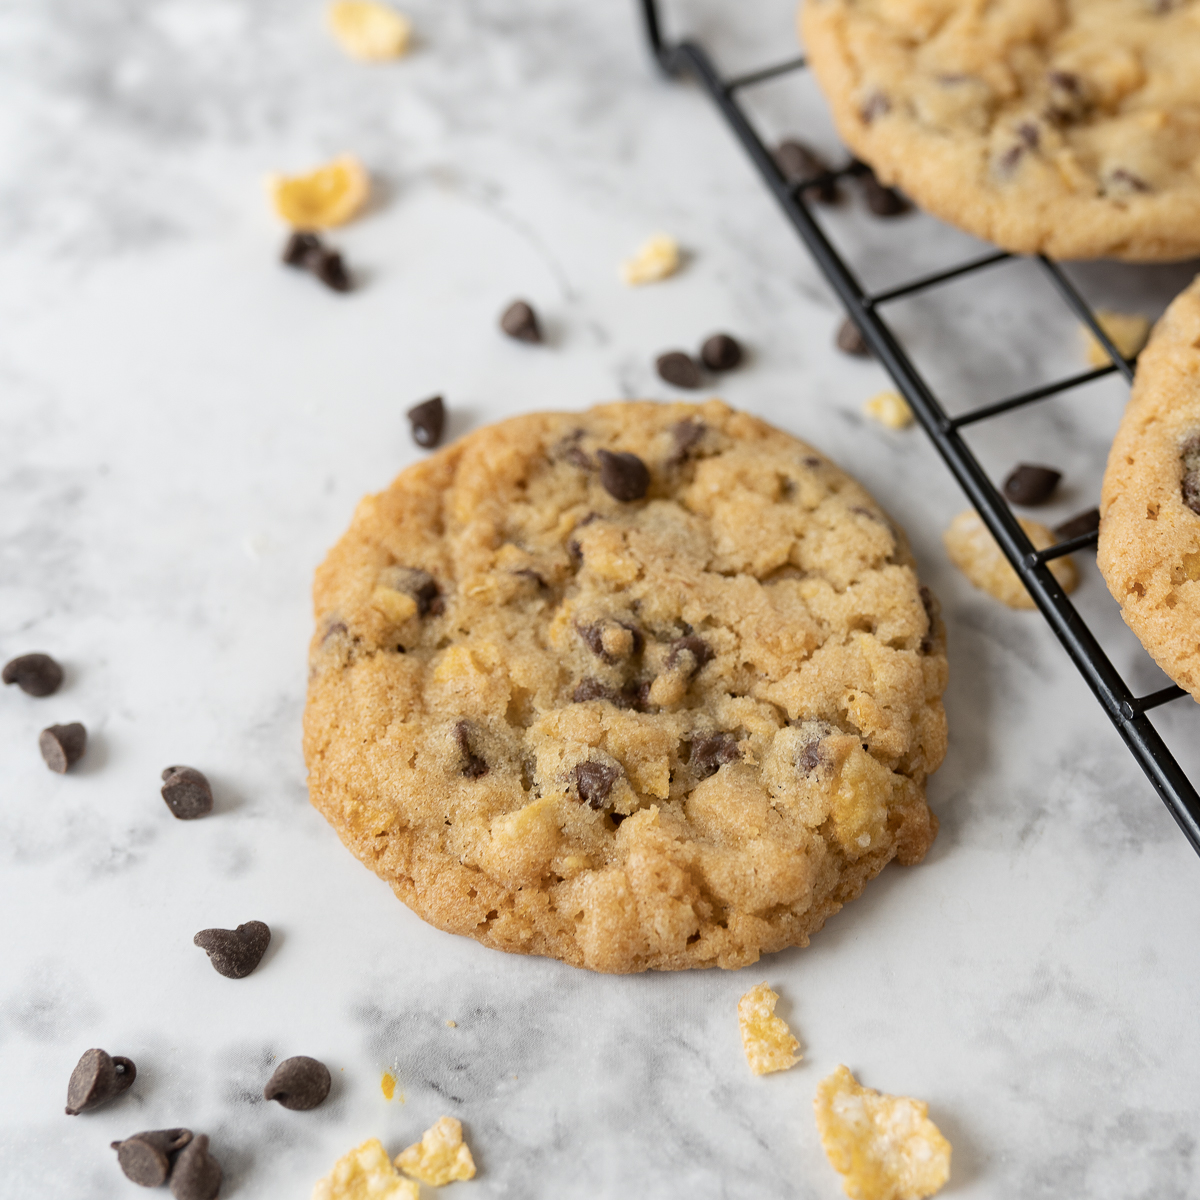 How to Make Cookies Crispy